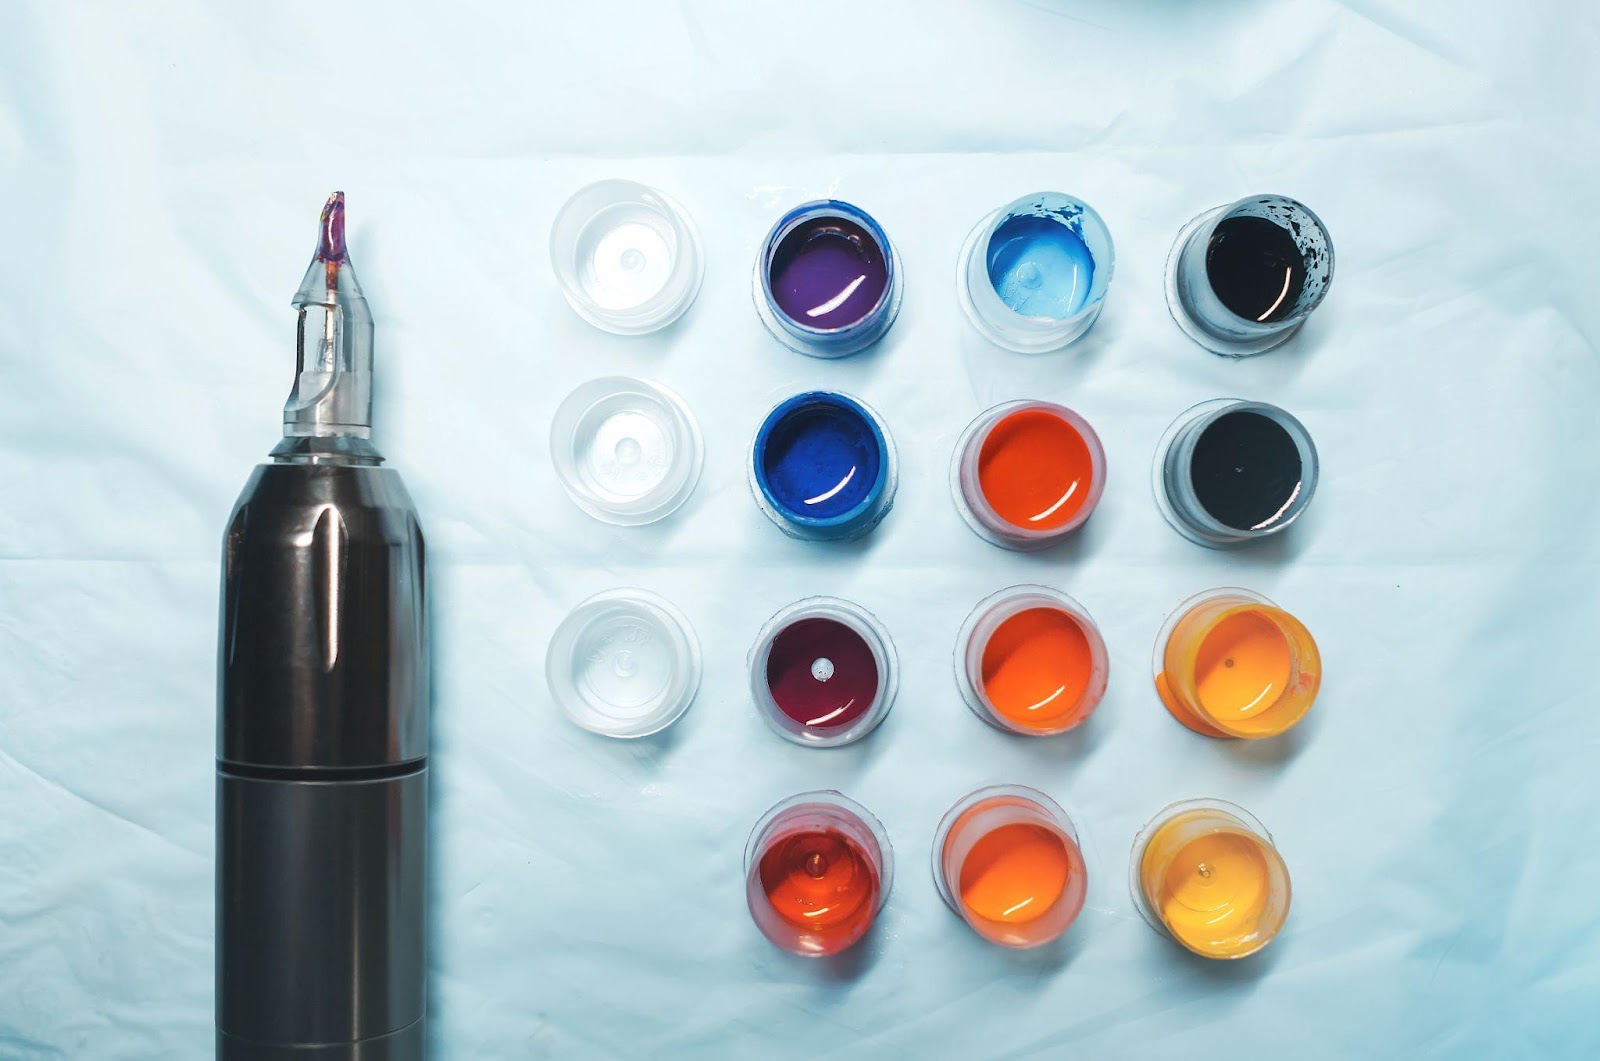 I pigmenti utilizzati negli inchiostri per tatuaggi sono spesso identici a quelli utilizzati per colorare vernici, plastica e tessuti.